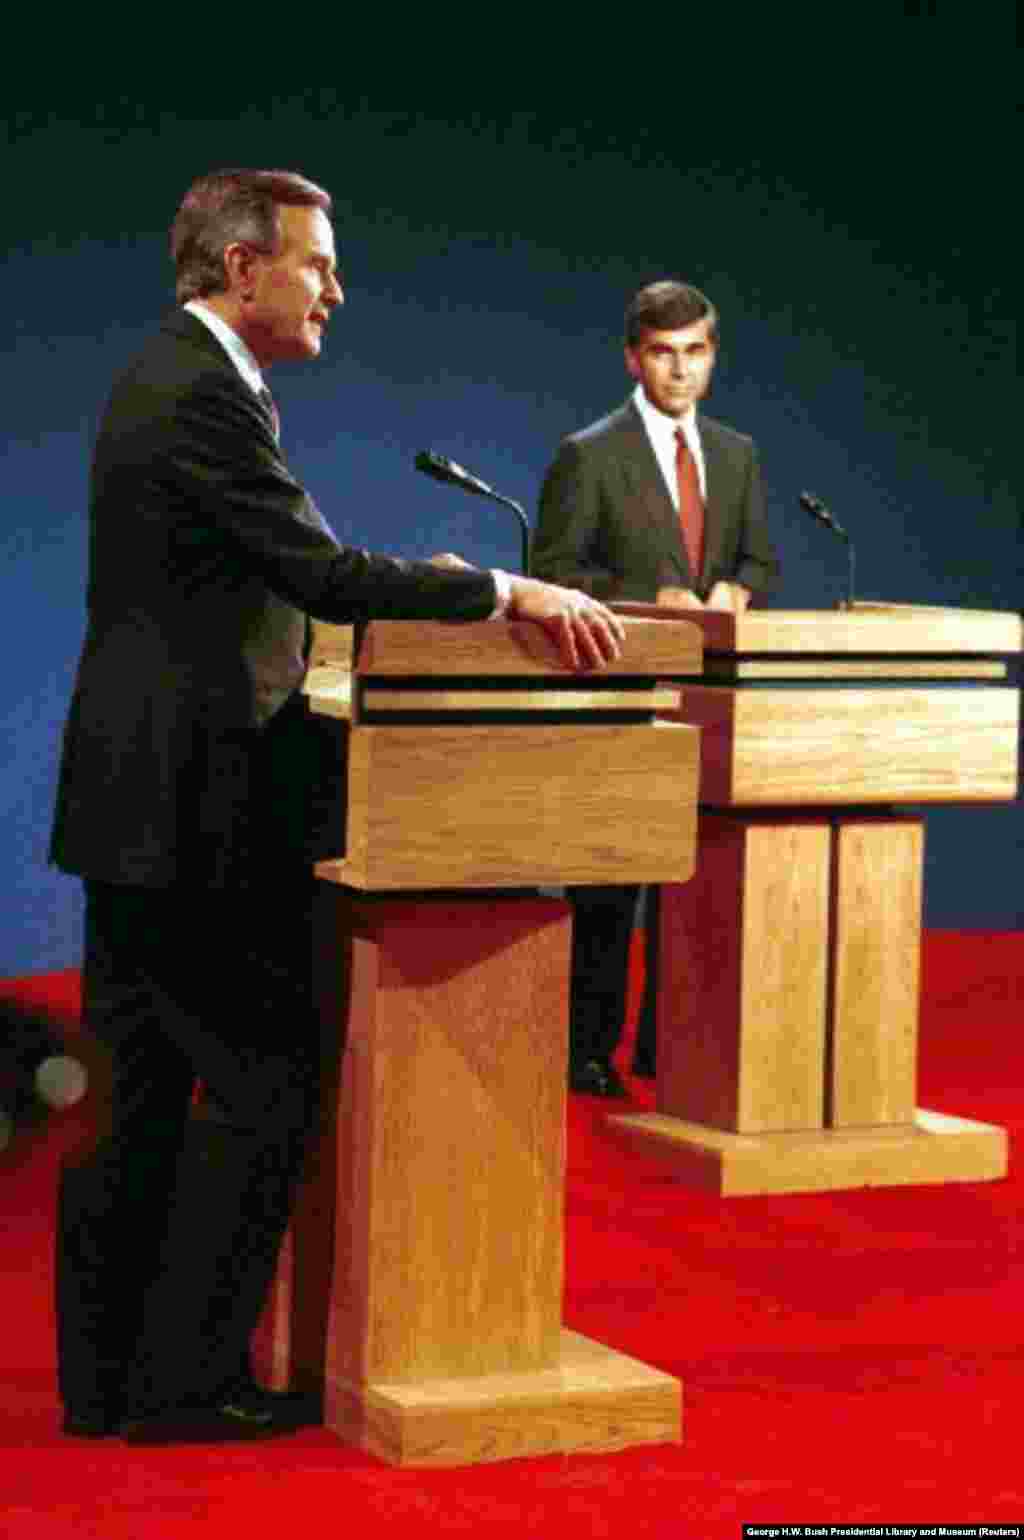 1988 рік: дебати республіканський віцепрезидент Джордж Х.В. Буш почав з того, що запитав кандидата від Демократичної партії Майкла Дукакіса, чи підтримає він смертну кару, щоб покарати того, хто зґвалтував і вбив його дружину. Це питання давало можливість кандидату, прозваного критиками &laquo;крижаним чоловіком&raquo;, продемонструвати свою емоційну сторону. Його відповідь зробила прямо протилежне. Буш здобув перемогу на виборах